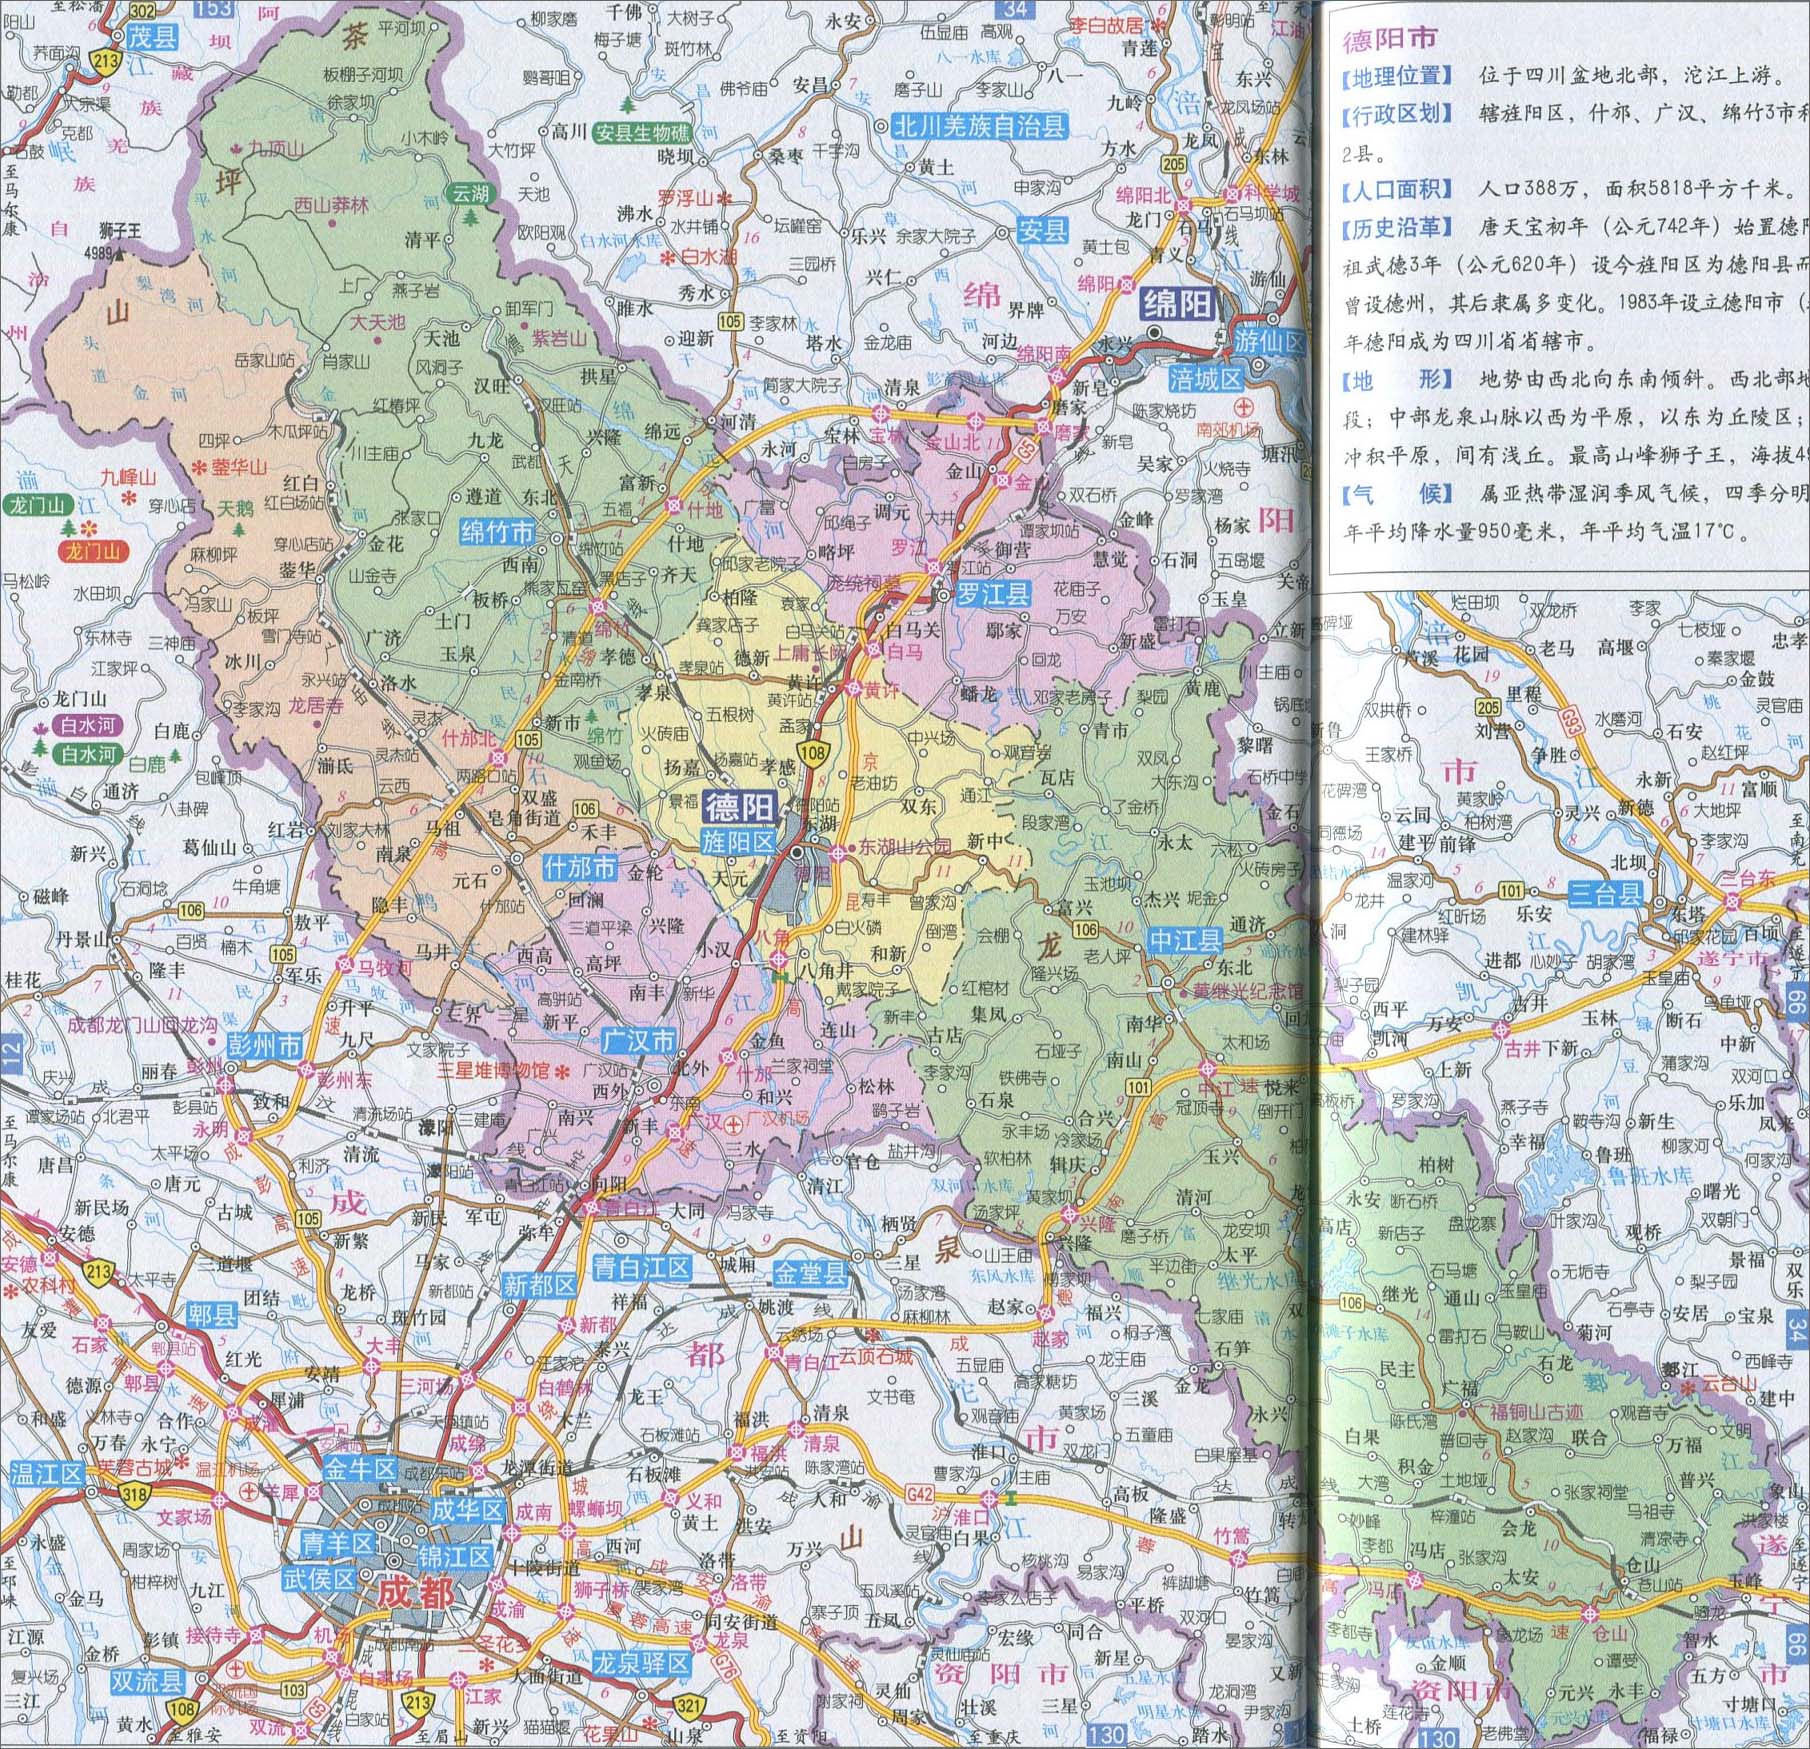 中国地图 四川 德阳市 >> 德阳市地图  相关链接: 成都市  雅安市图片